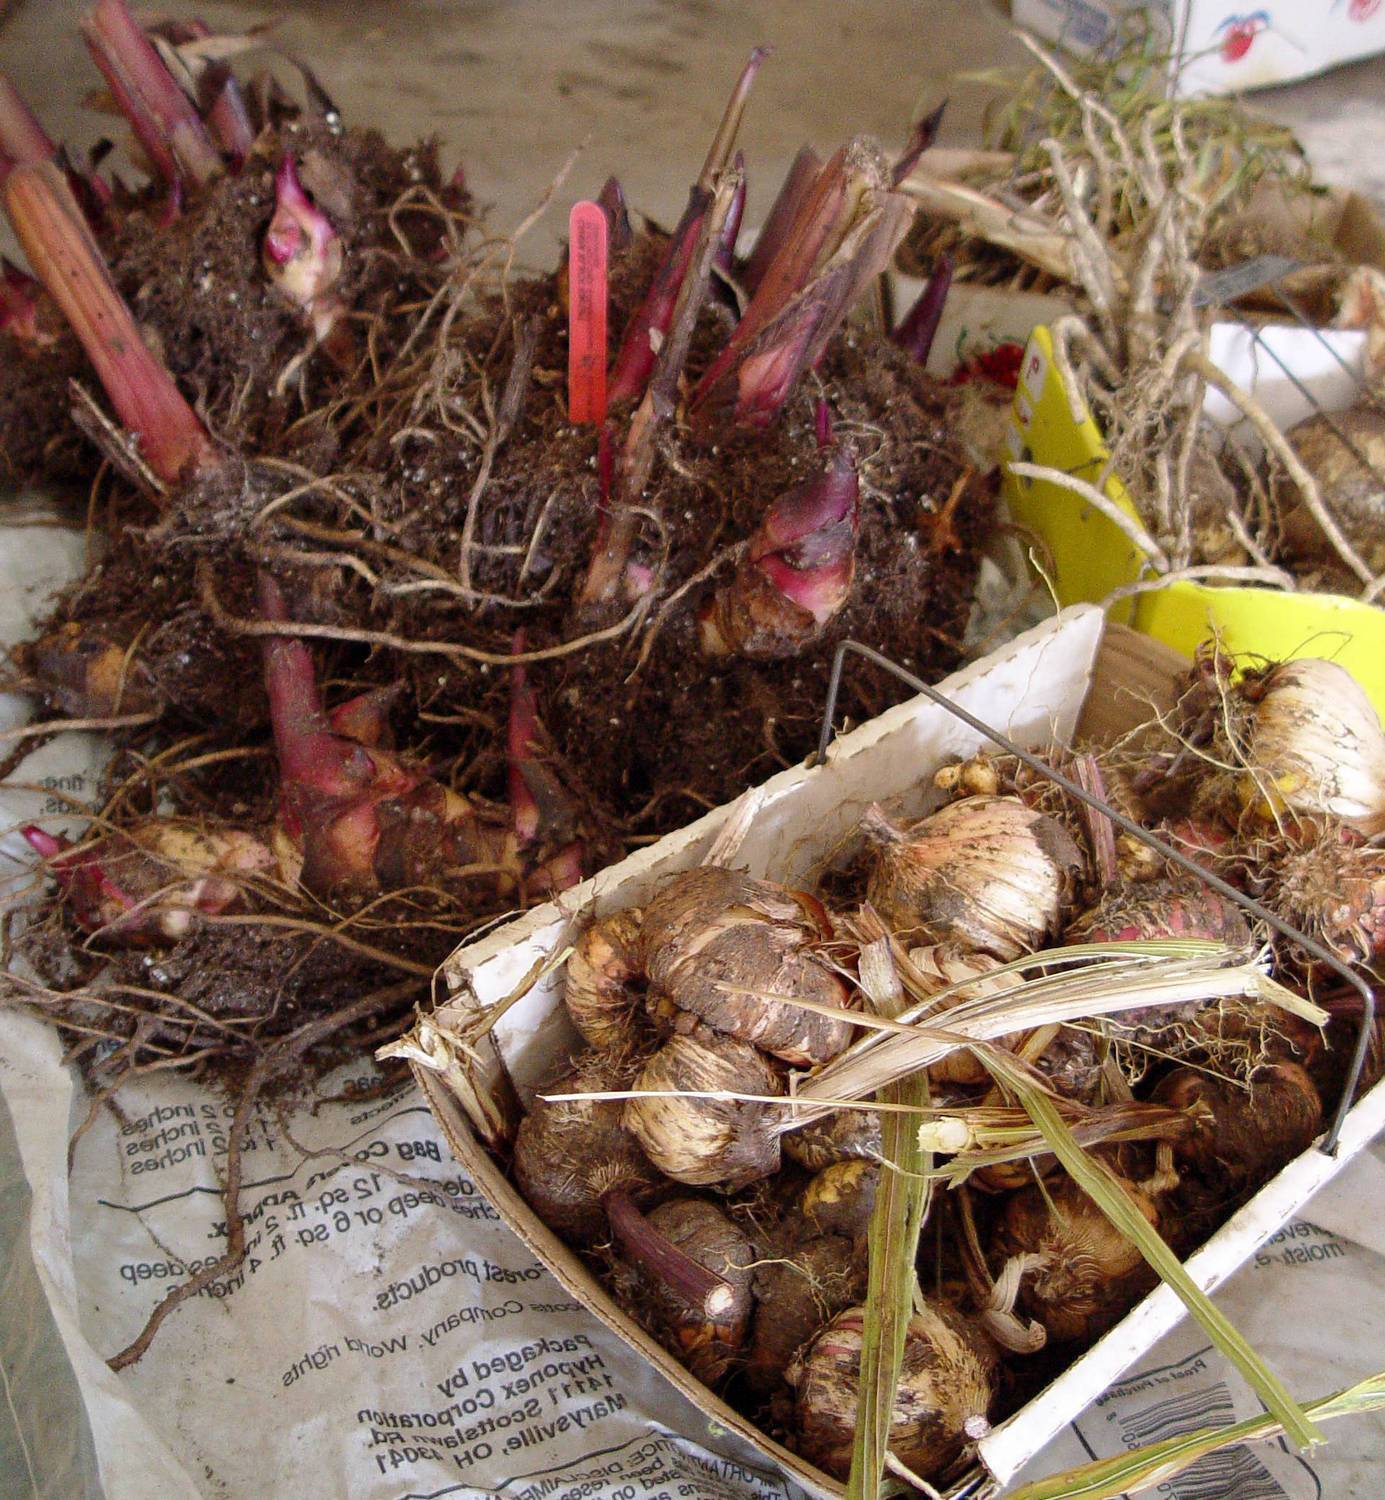 Условия хранения луковиц тюльпанов после выкопки